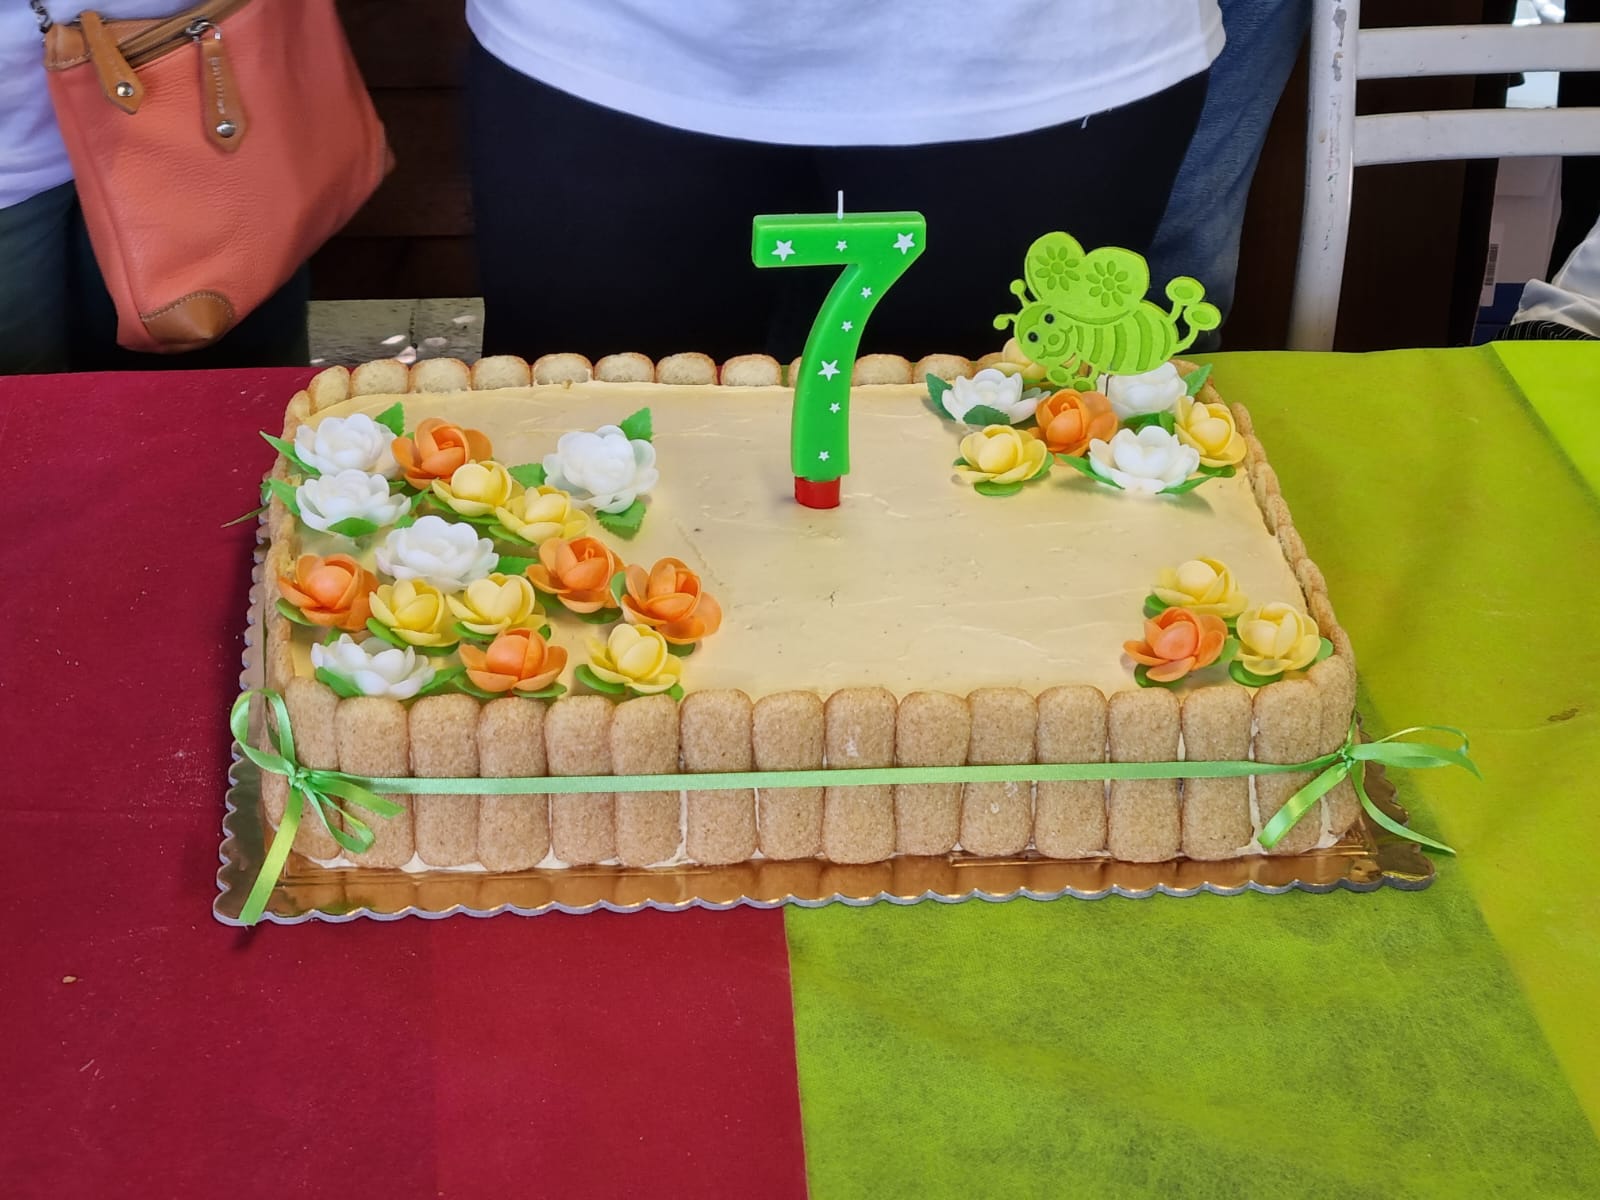 Ortolino festeggia 7 anni